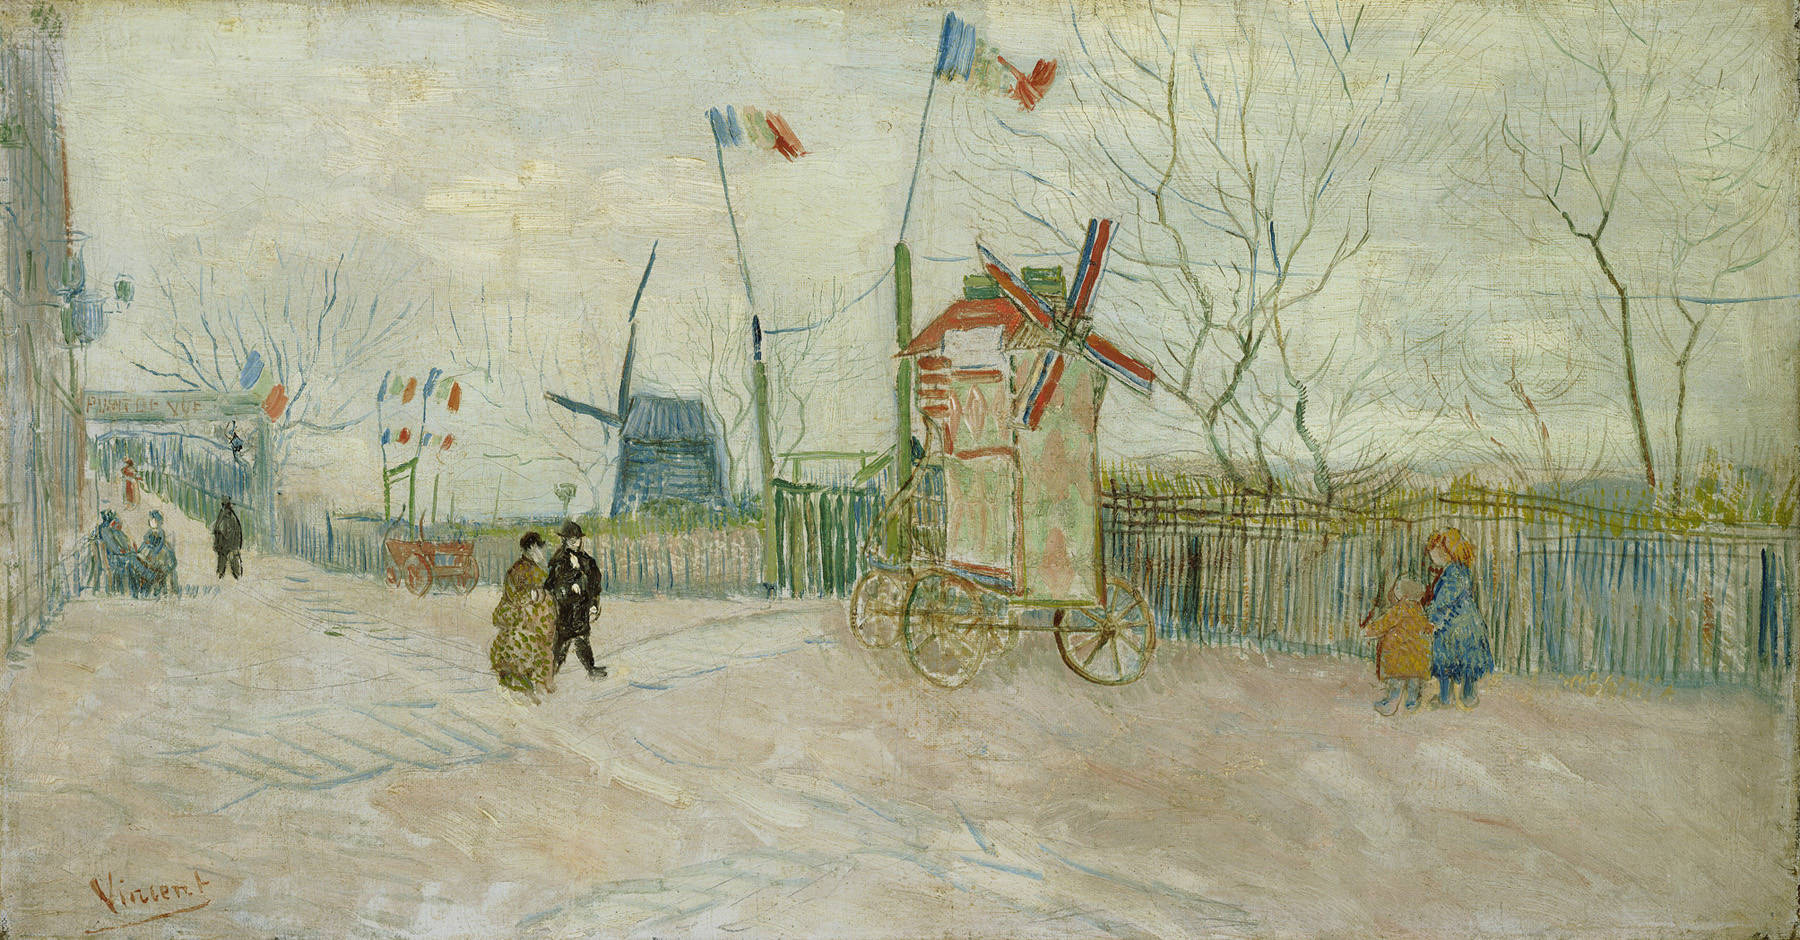 Scène de rue à Montmartre - le moulin de Poivre  by Vincent van Gogh - 1887 Van Gogh Museum